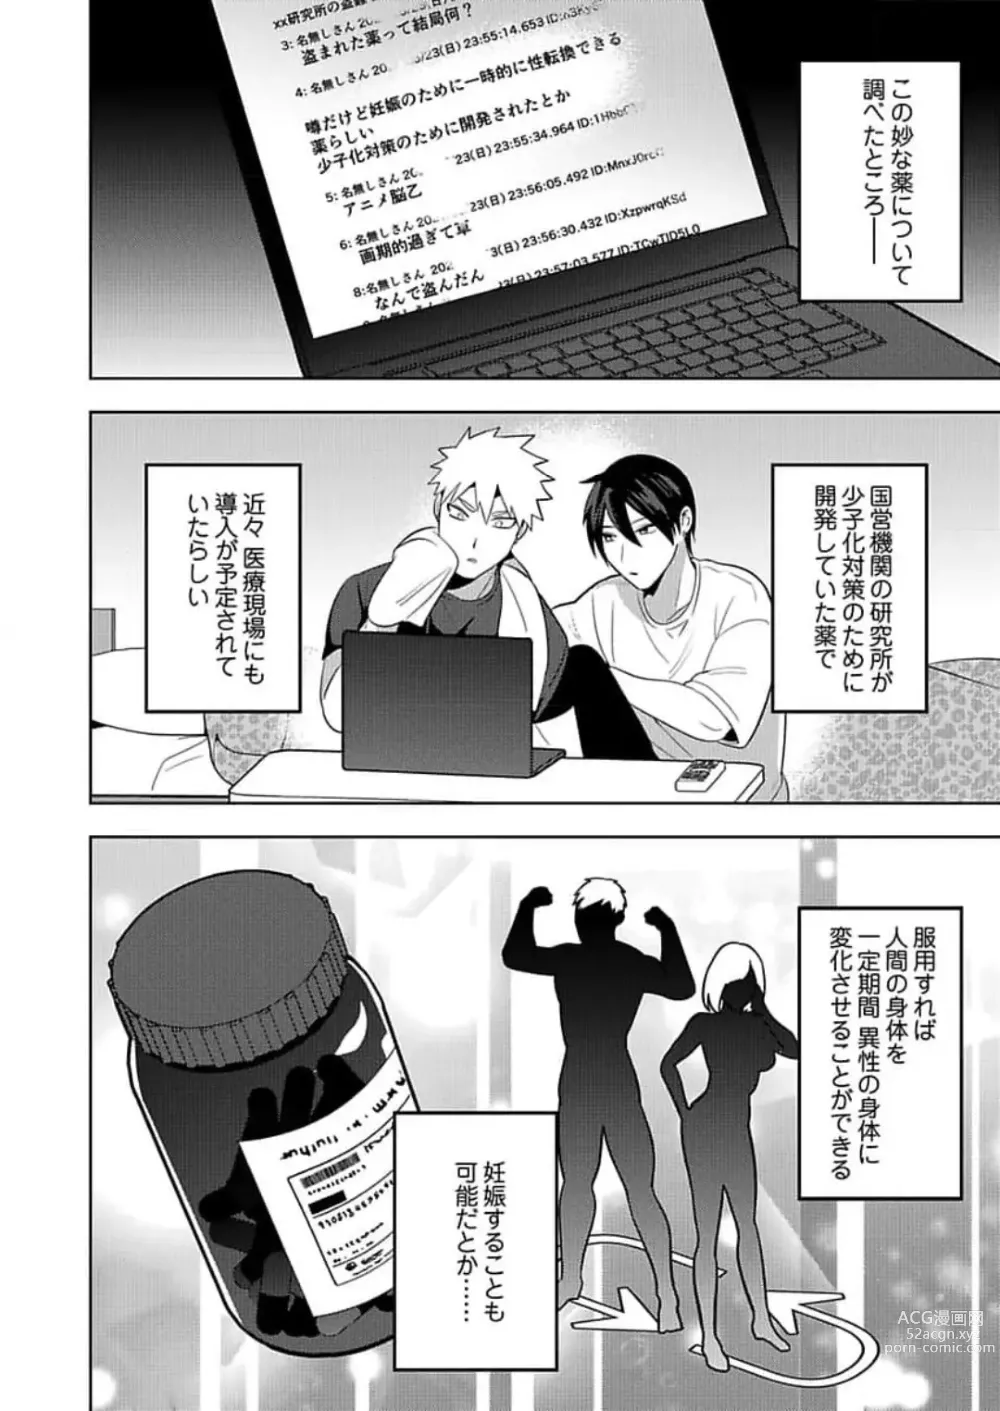 Page 3 of manga Seme Nyotaika ~Koshifuru Omae mo Itoshikute~ 2-3